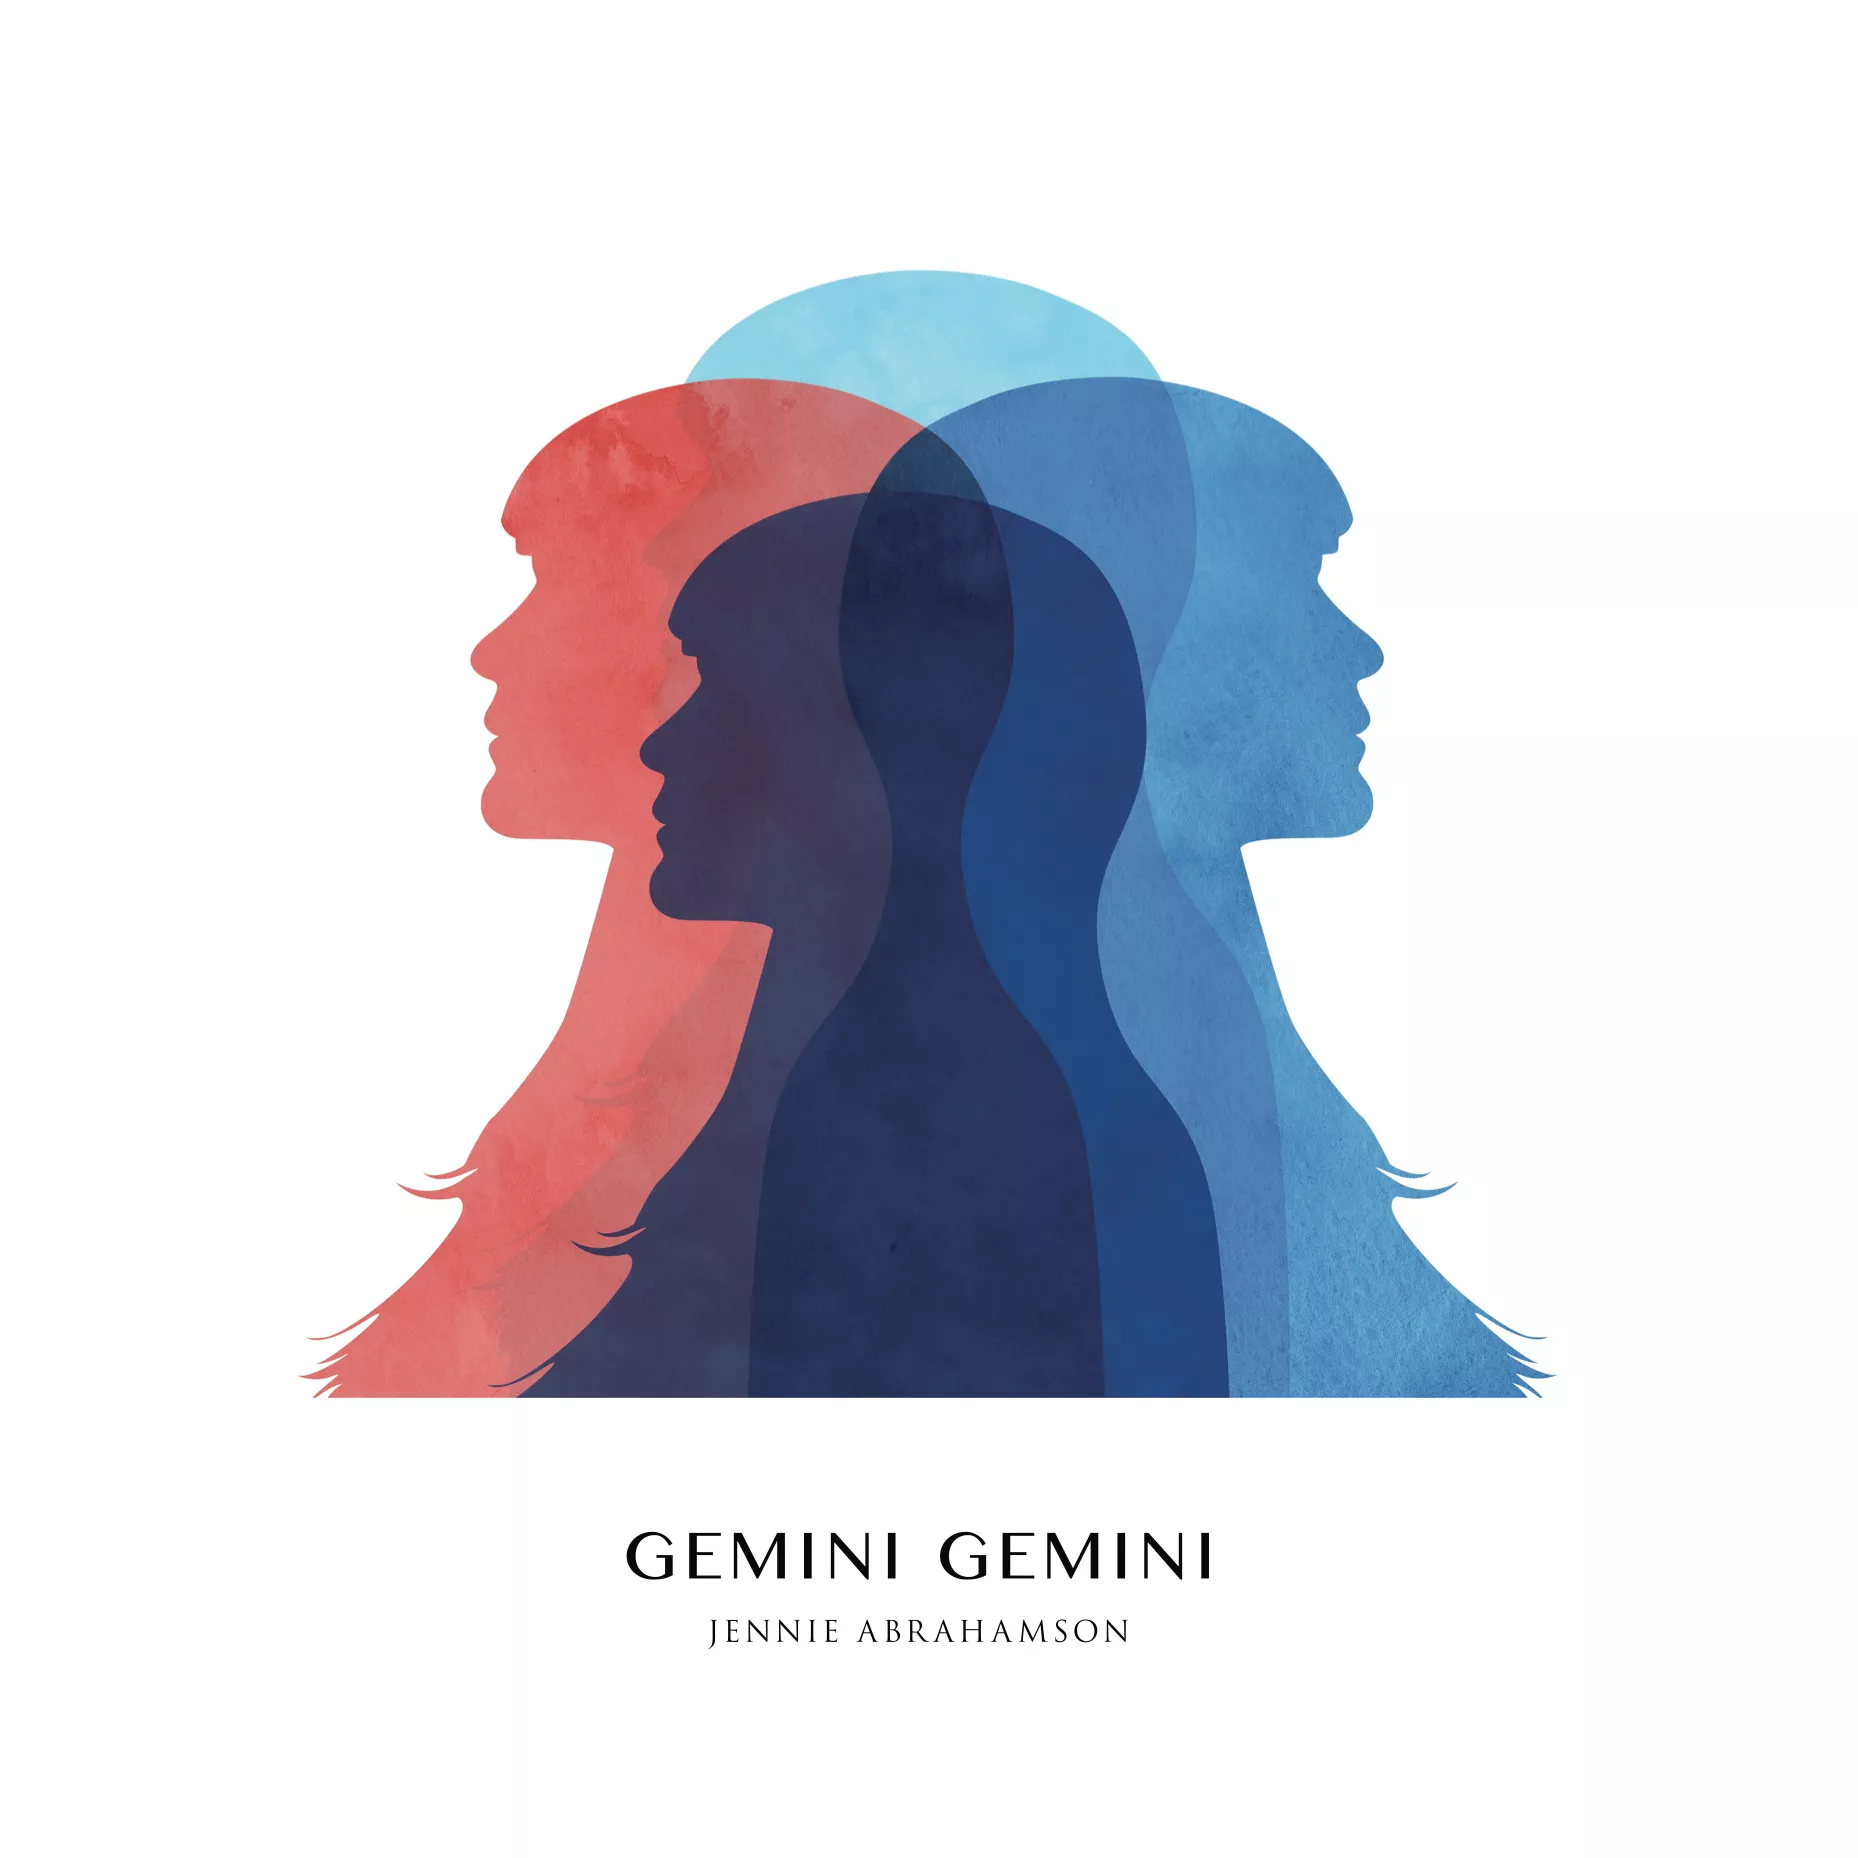 Gemini Gemini  - Jennie Abrahamson